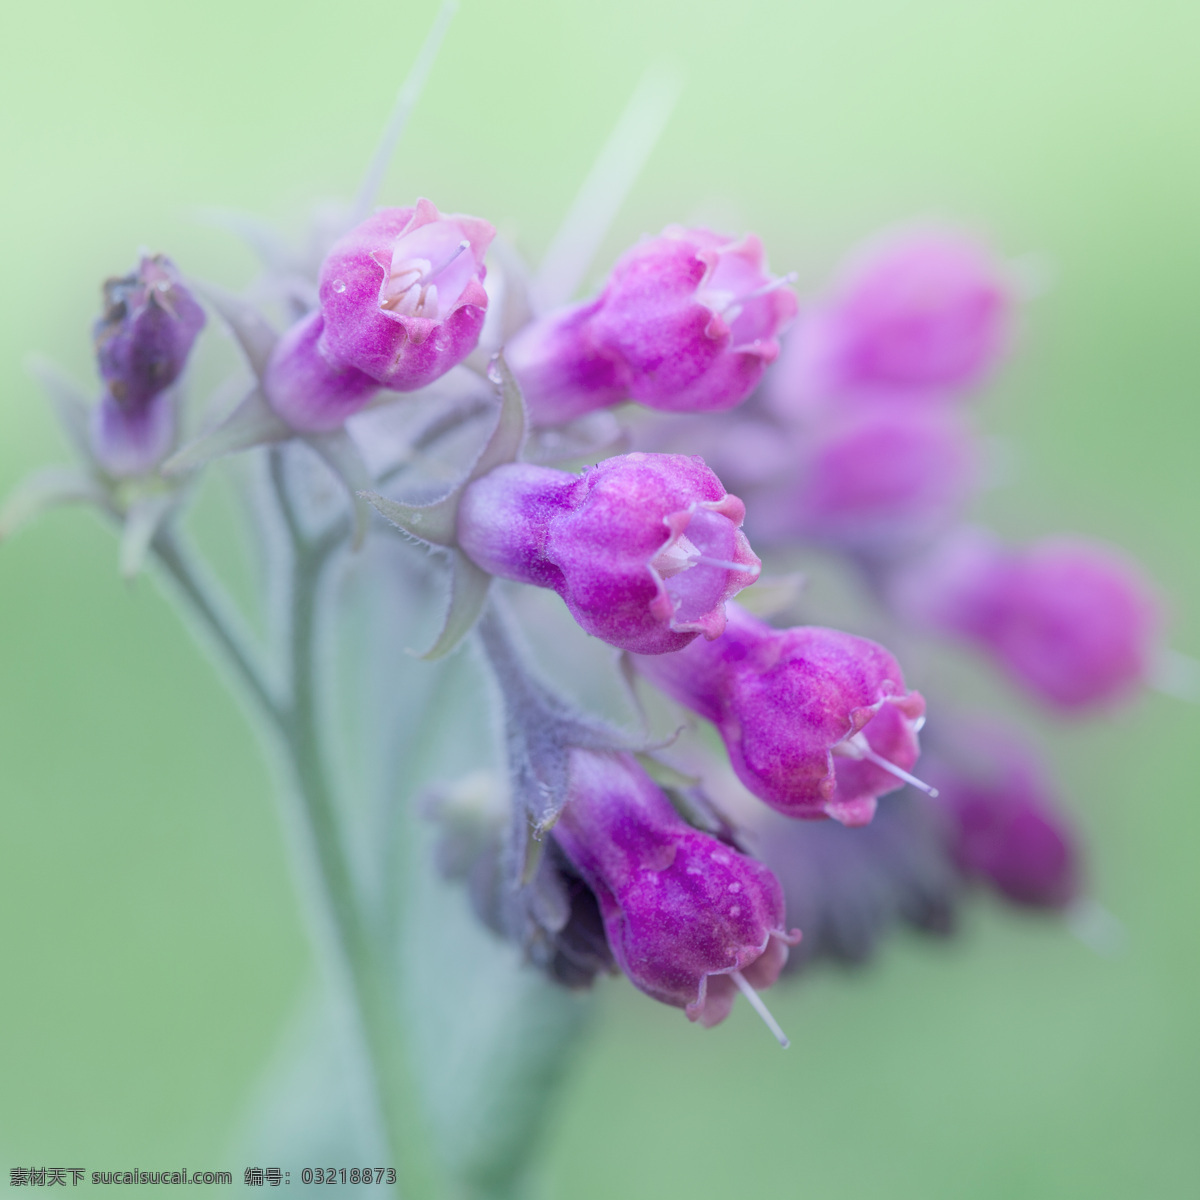 灯笼海棠 紫草科植物 花芽 紫色小花 粉色小花 喇叭花 花草 生物世界